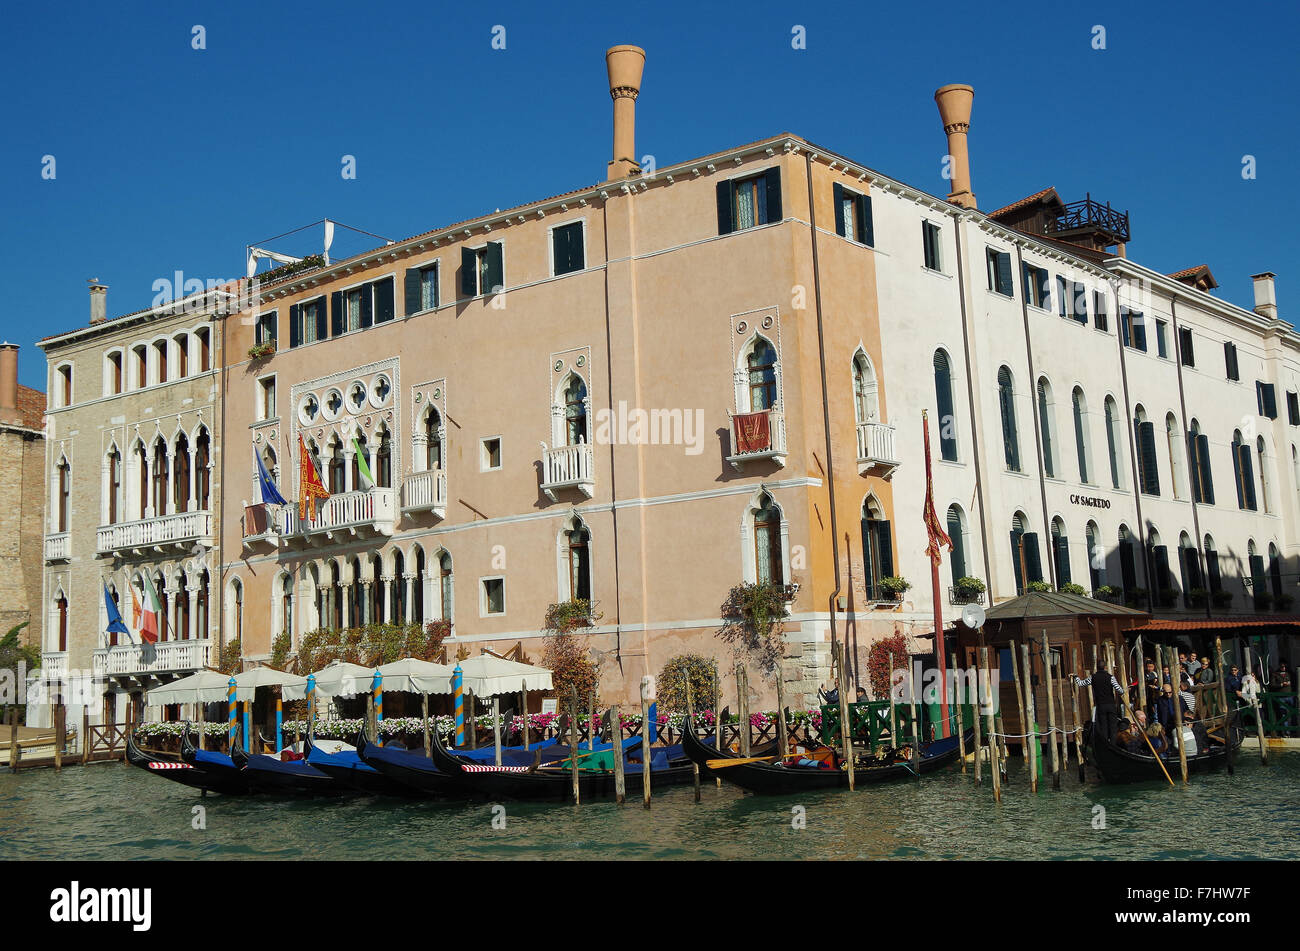 Venice Italy Palazzo Morosini Sagredo, Grand Canal Stock Photo